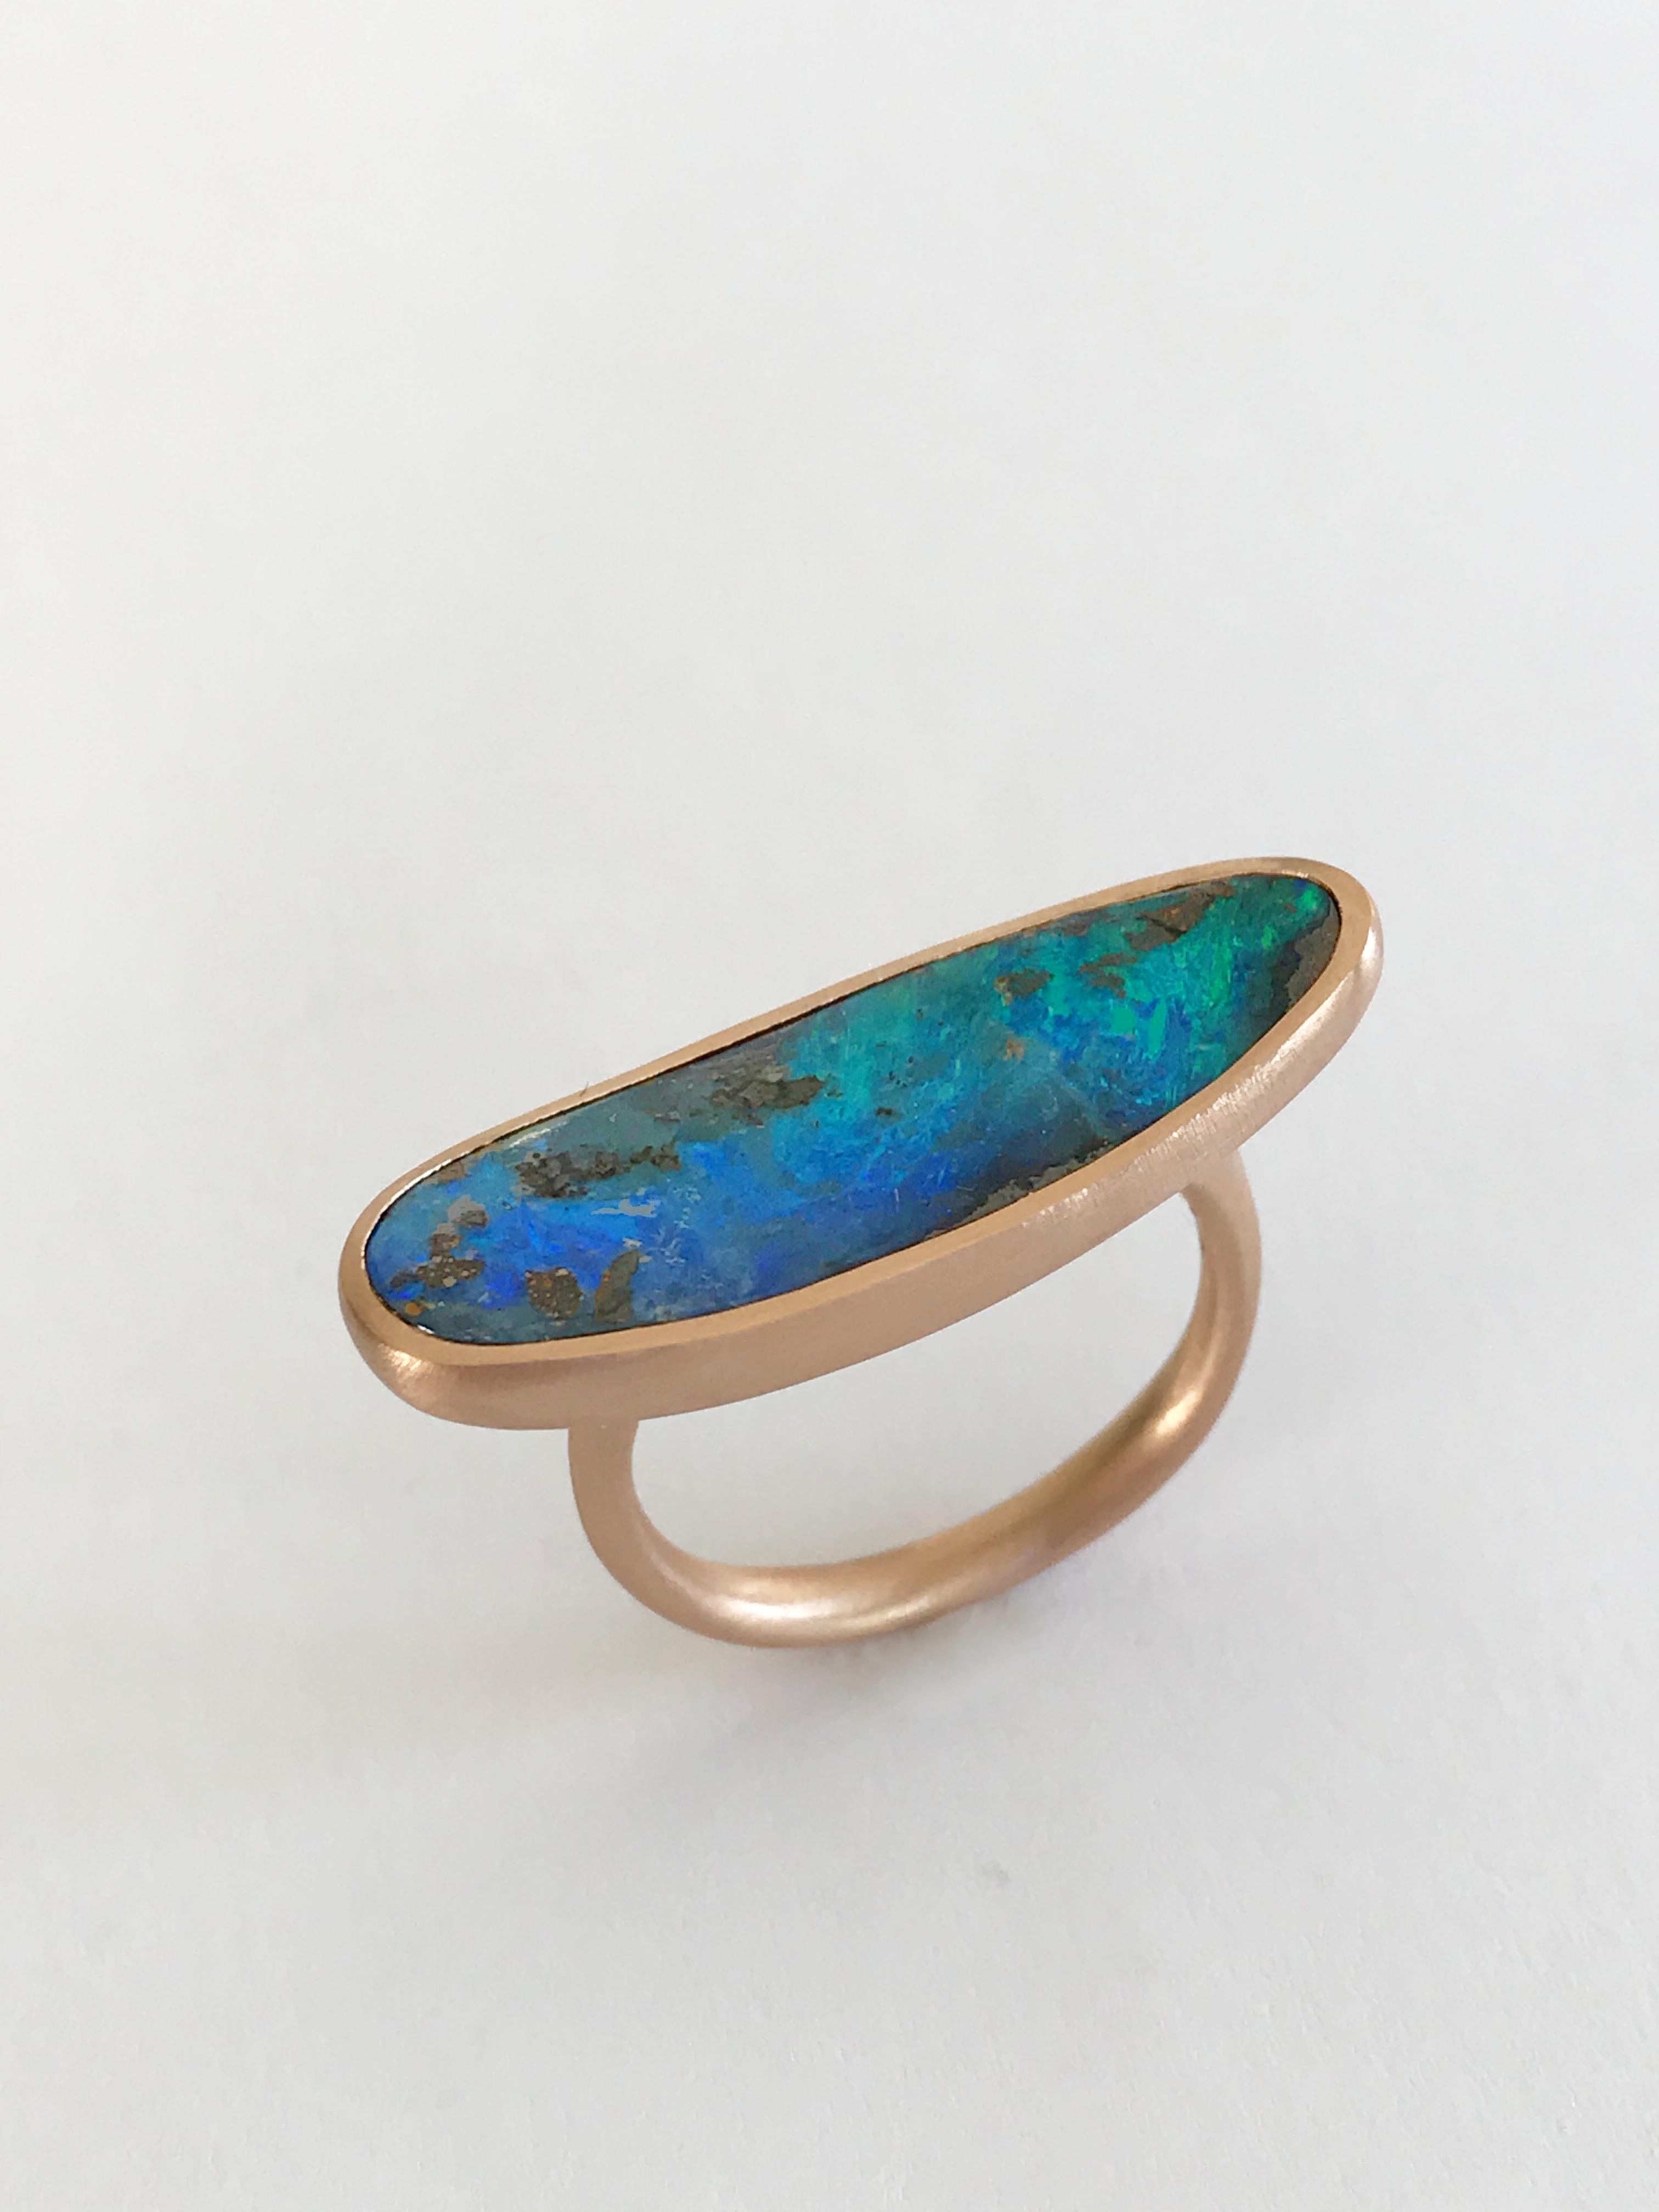 Dalben Very Long Boulder Opal Rose Gold Ring For Sale 4